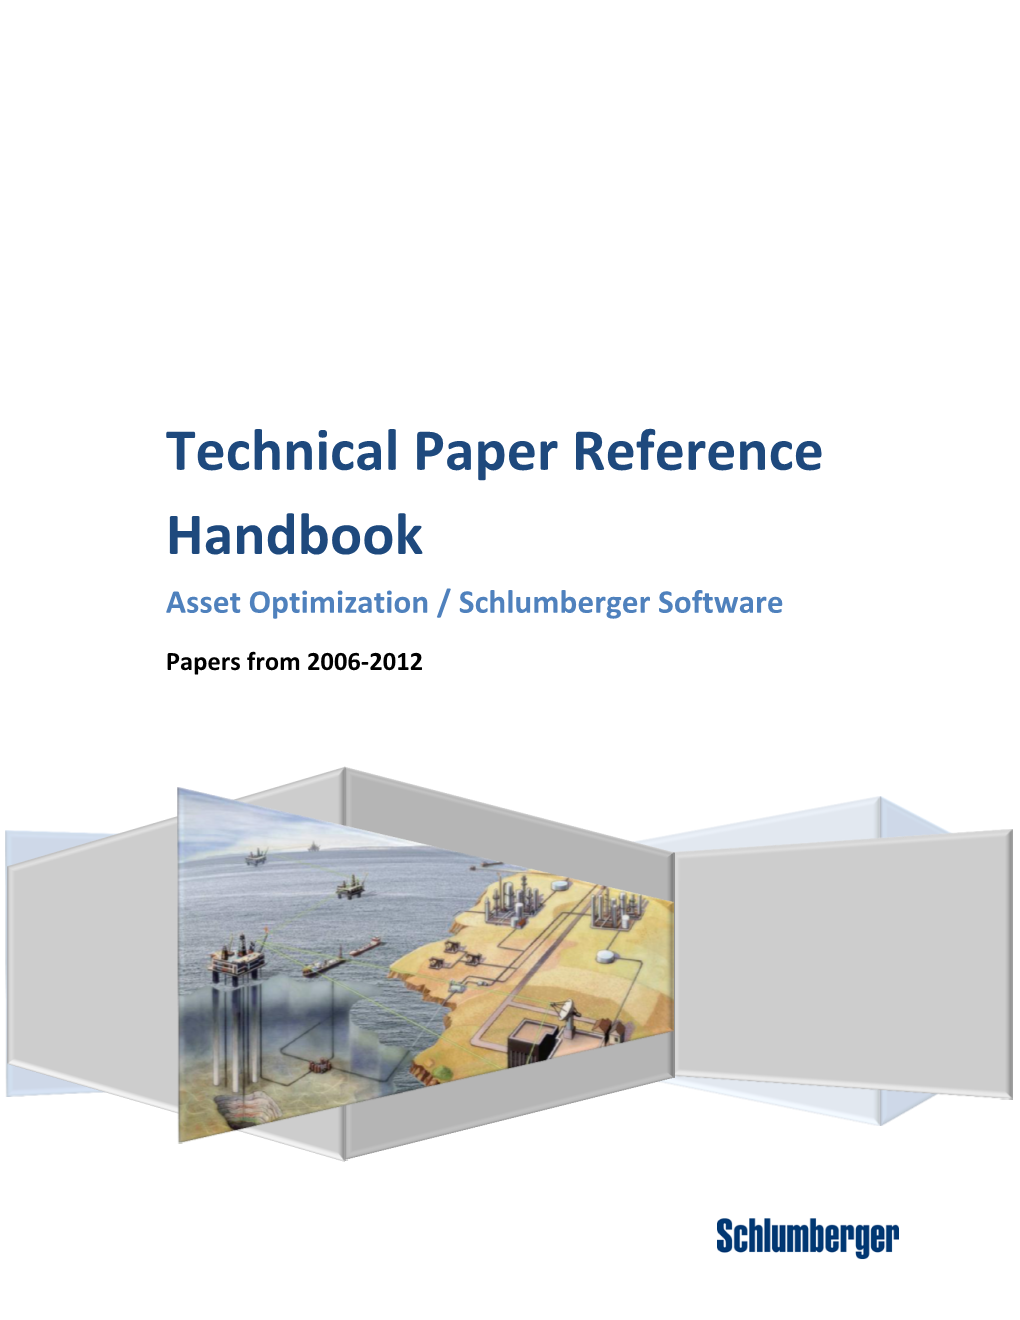 Technical Paper Reference Handbook Asset Optimization / Schlumberger Software